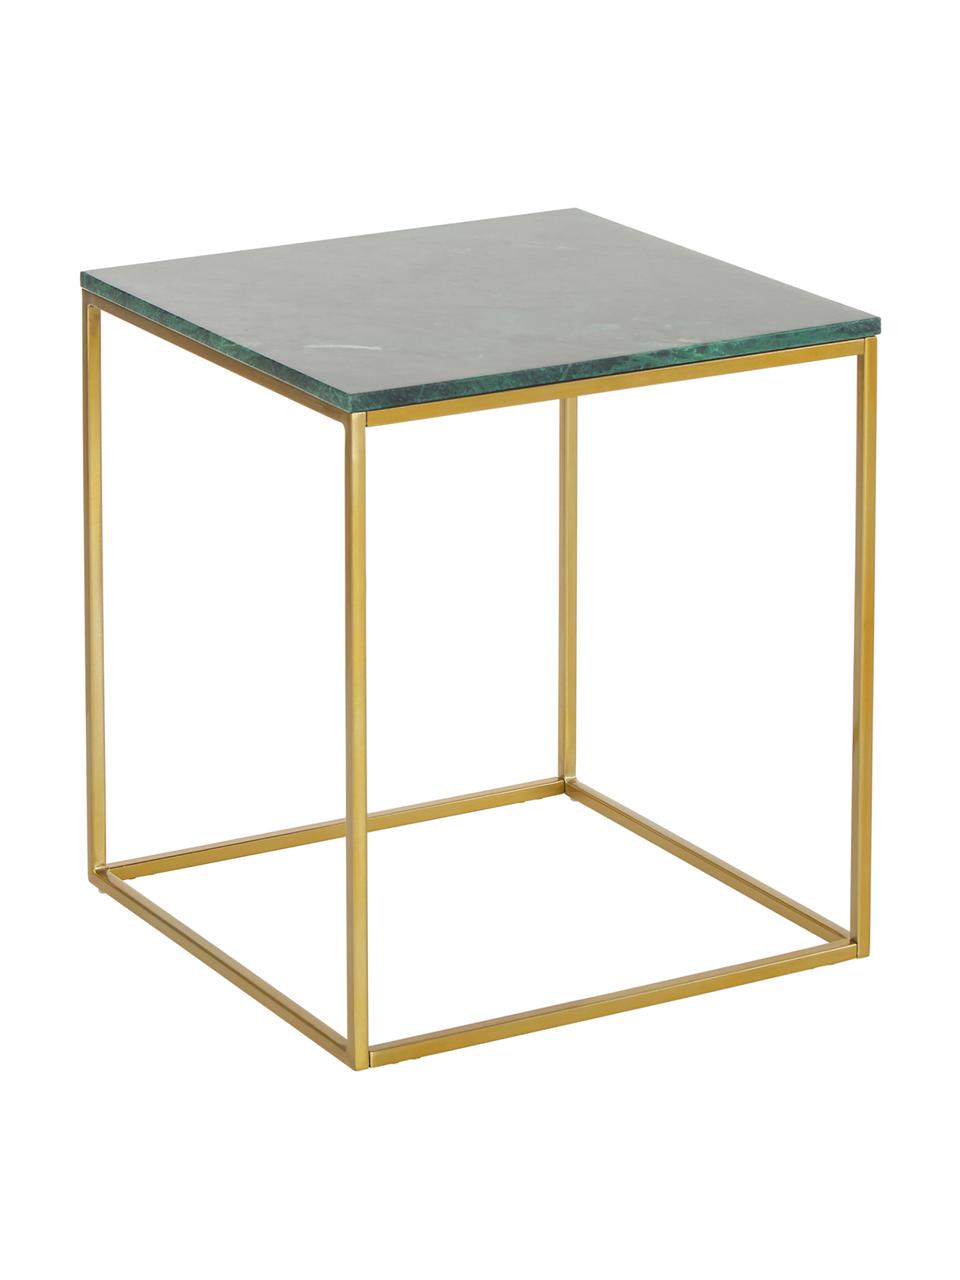 Marmor-Beistelltisch Alys, Tischplatte: Marmor, Gestell: Metall, pulverbeschichtet, Grüner Marmor, Goldfarben, B 45 x H 50 cm